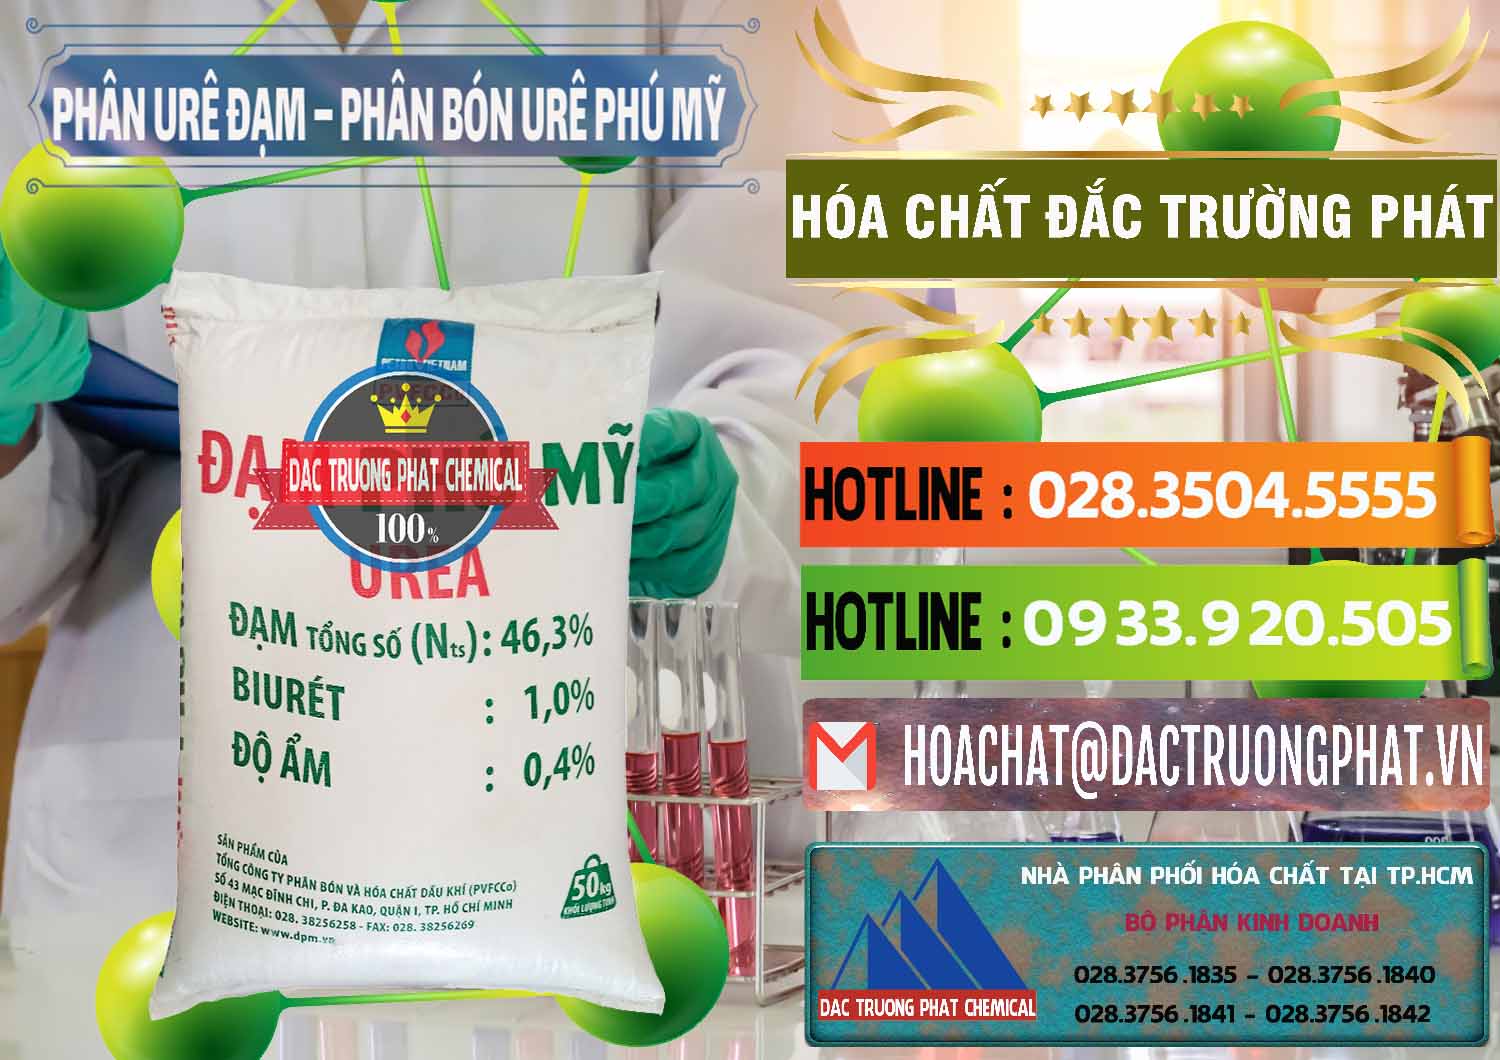 Nơi chuyên cung cấp & kinh doanh Phân Urê Đạm – Phân Bón Urê Phú Mỹ Việt Nam - 0193 - Cty kinh doanh và phân phối hóa chất tại TP.HCM - cungcaphoachat.com.vn